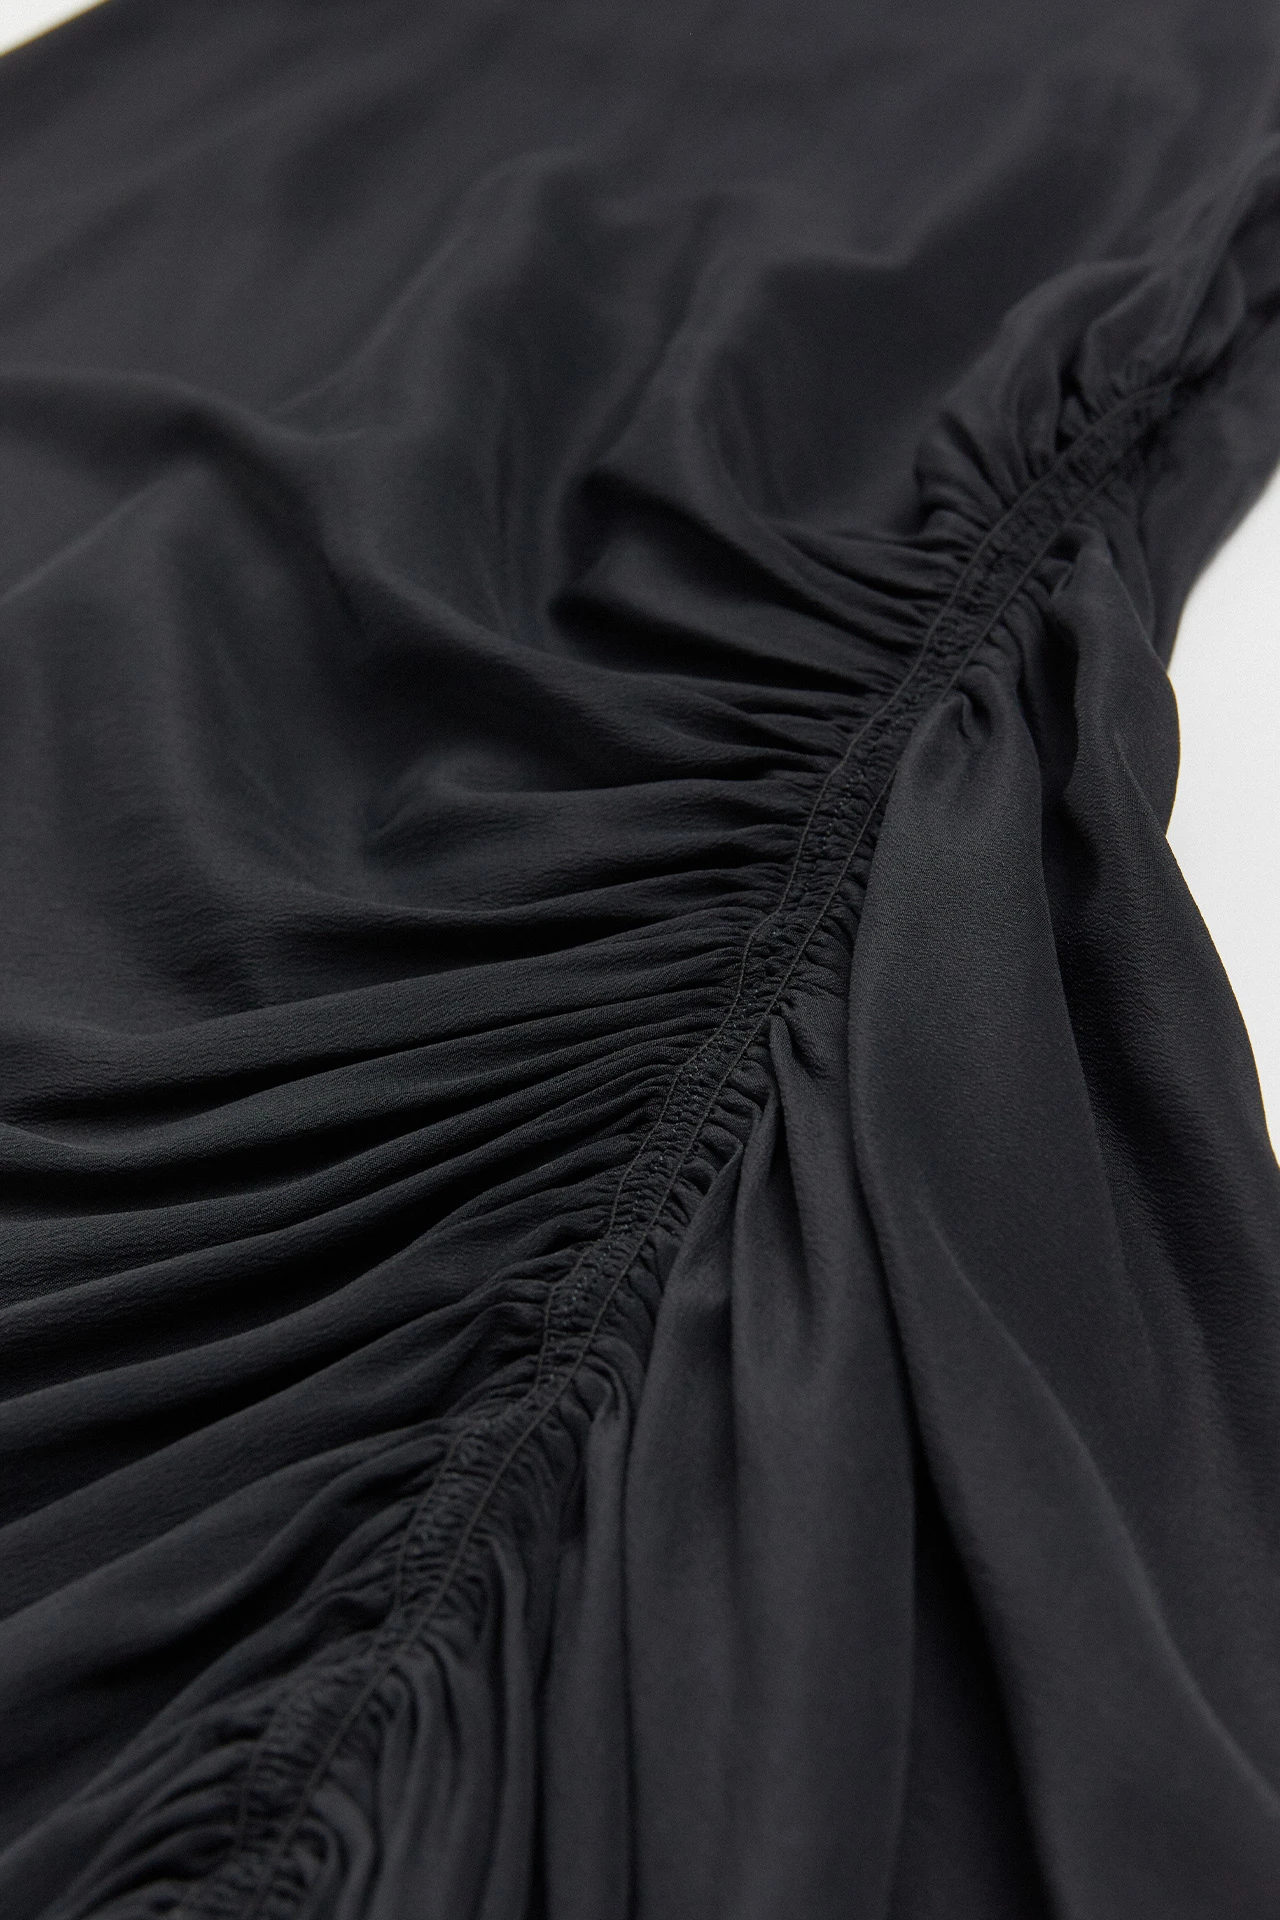 Miista-ze-black-skirt-02